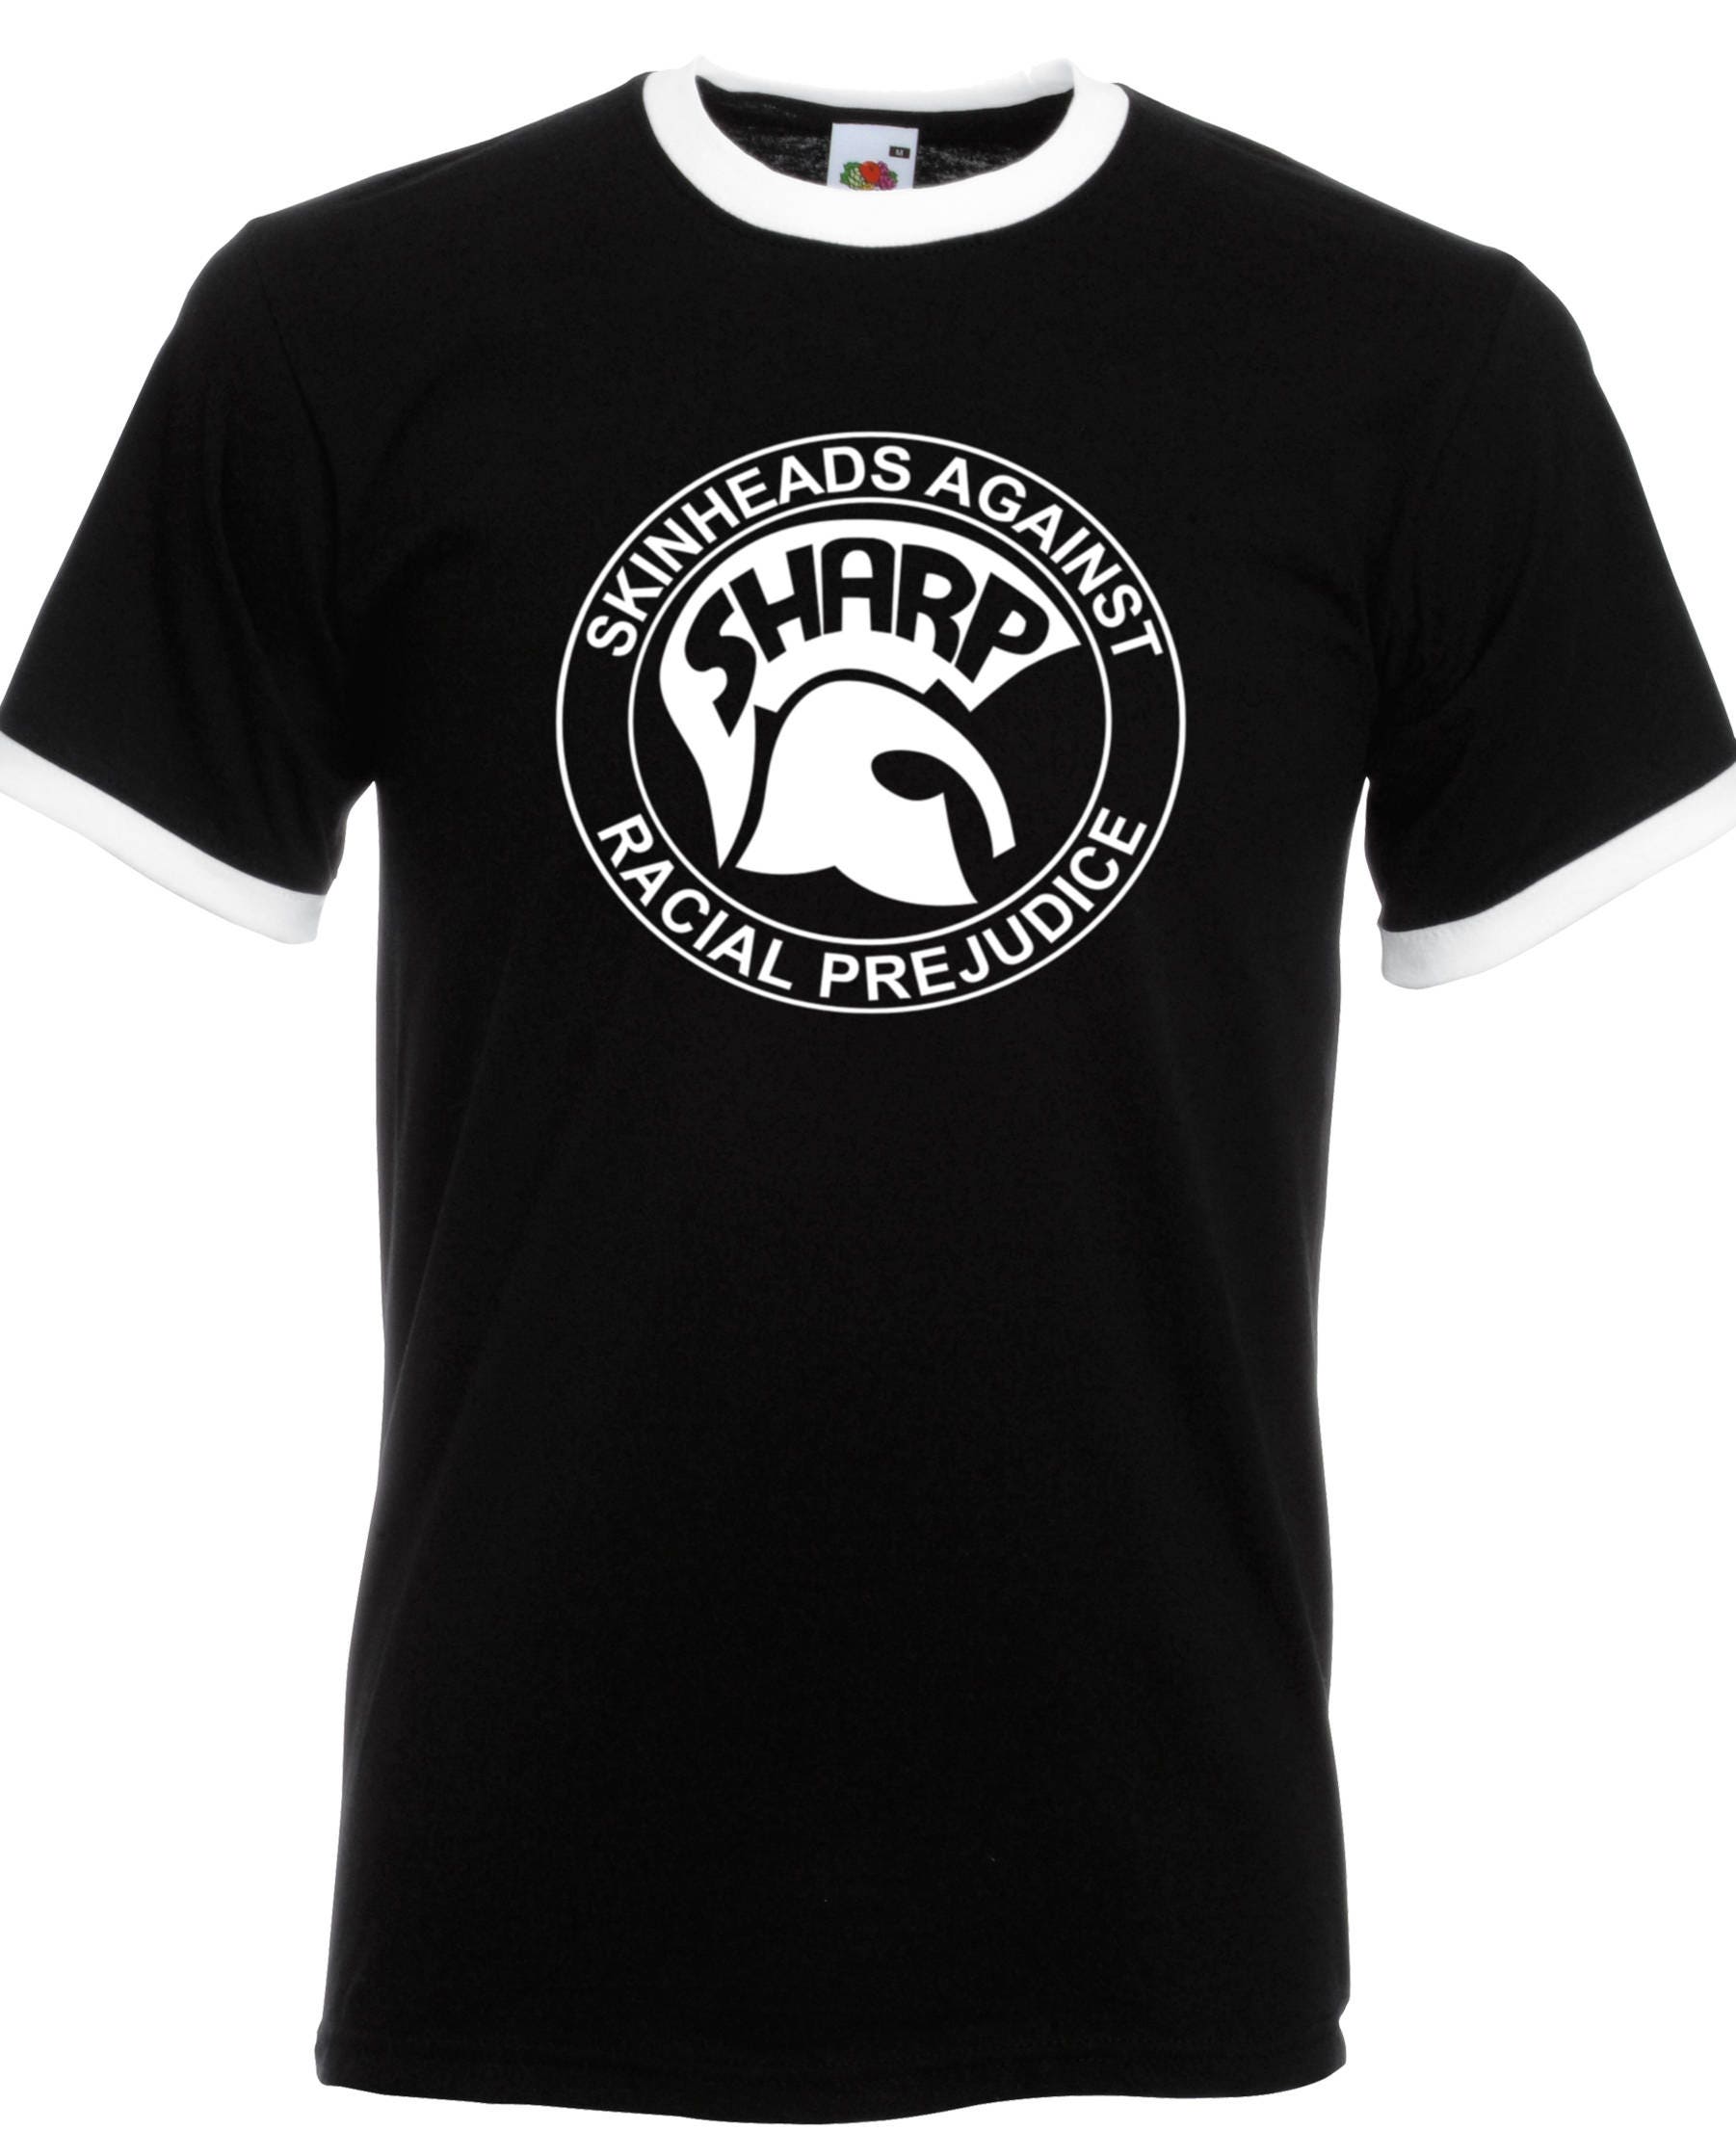 SHARP Skinheads Against Racial Prejudice Ringer T-shirt - Etsy